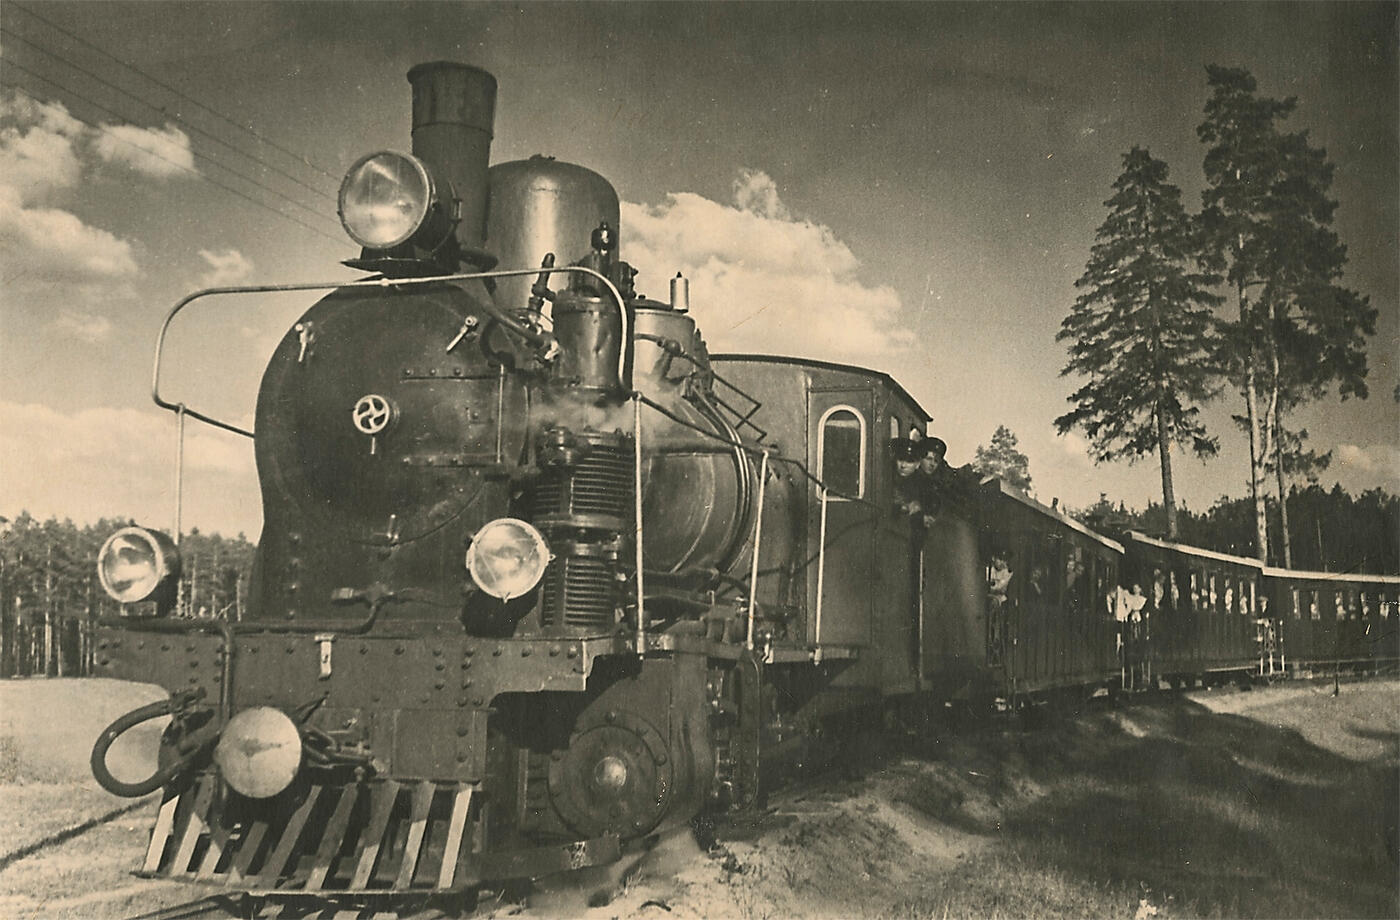 Children's Railway Built by Schoolchildren